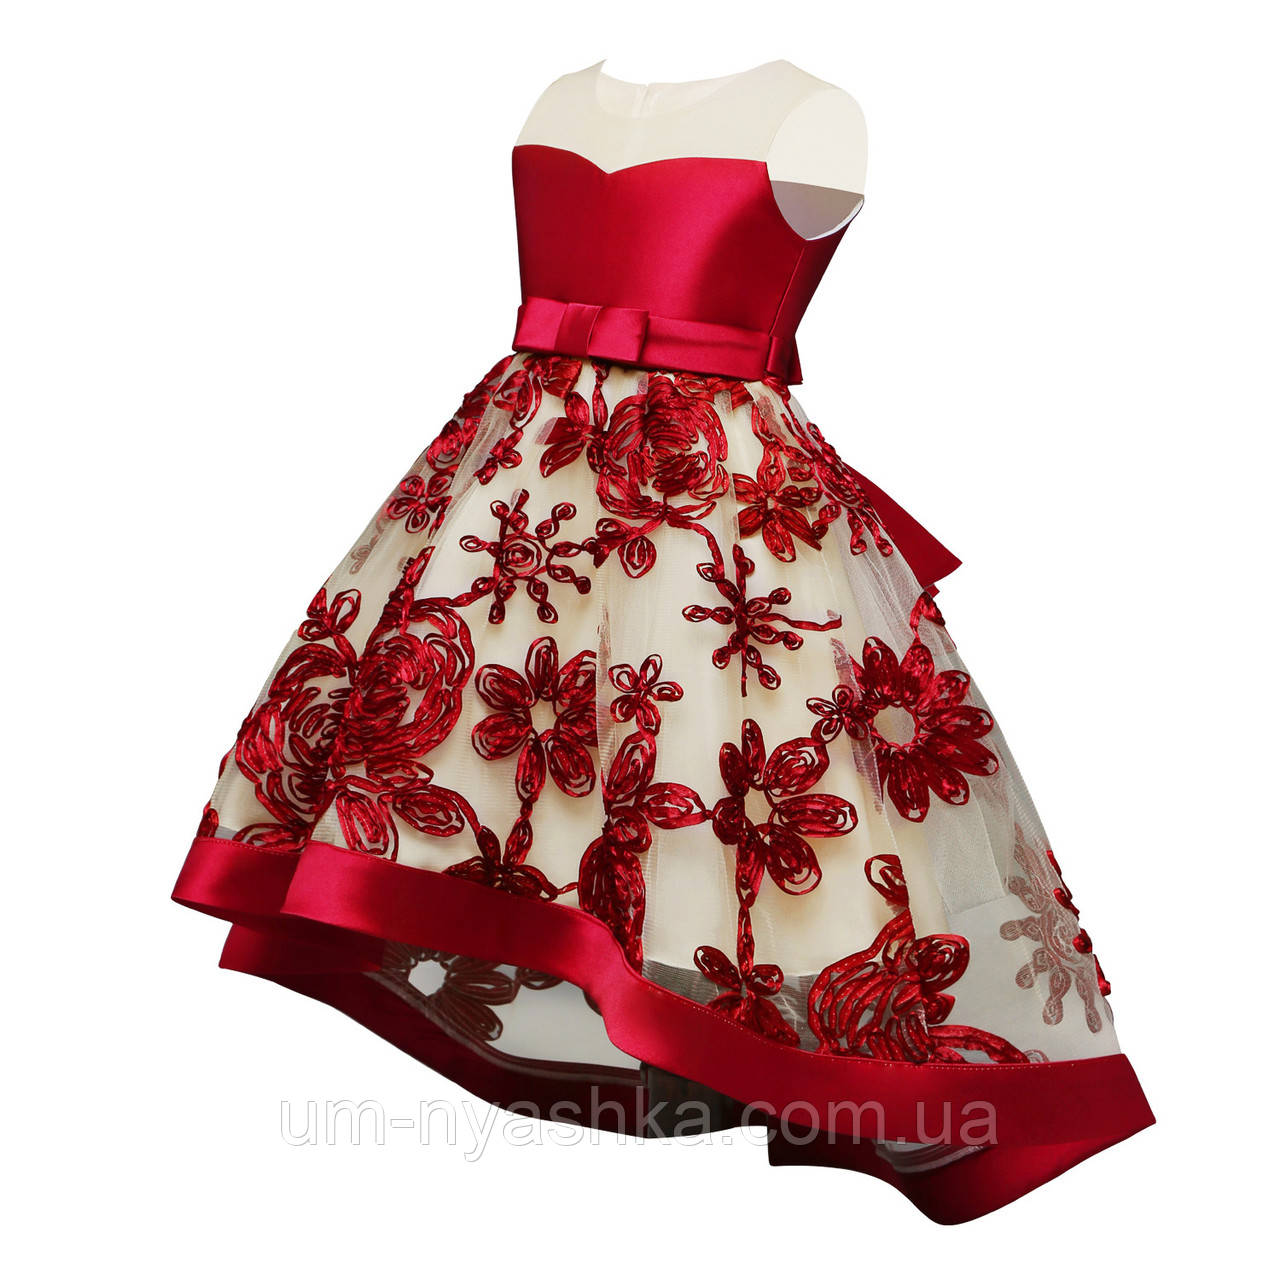 Дитяча сукня видовжене ззаду на зростання Винно-червона на 5-6 років